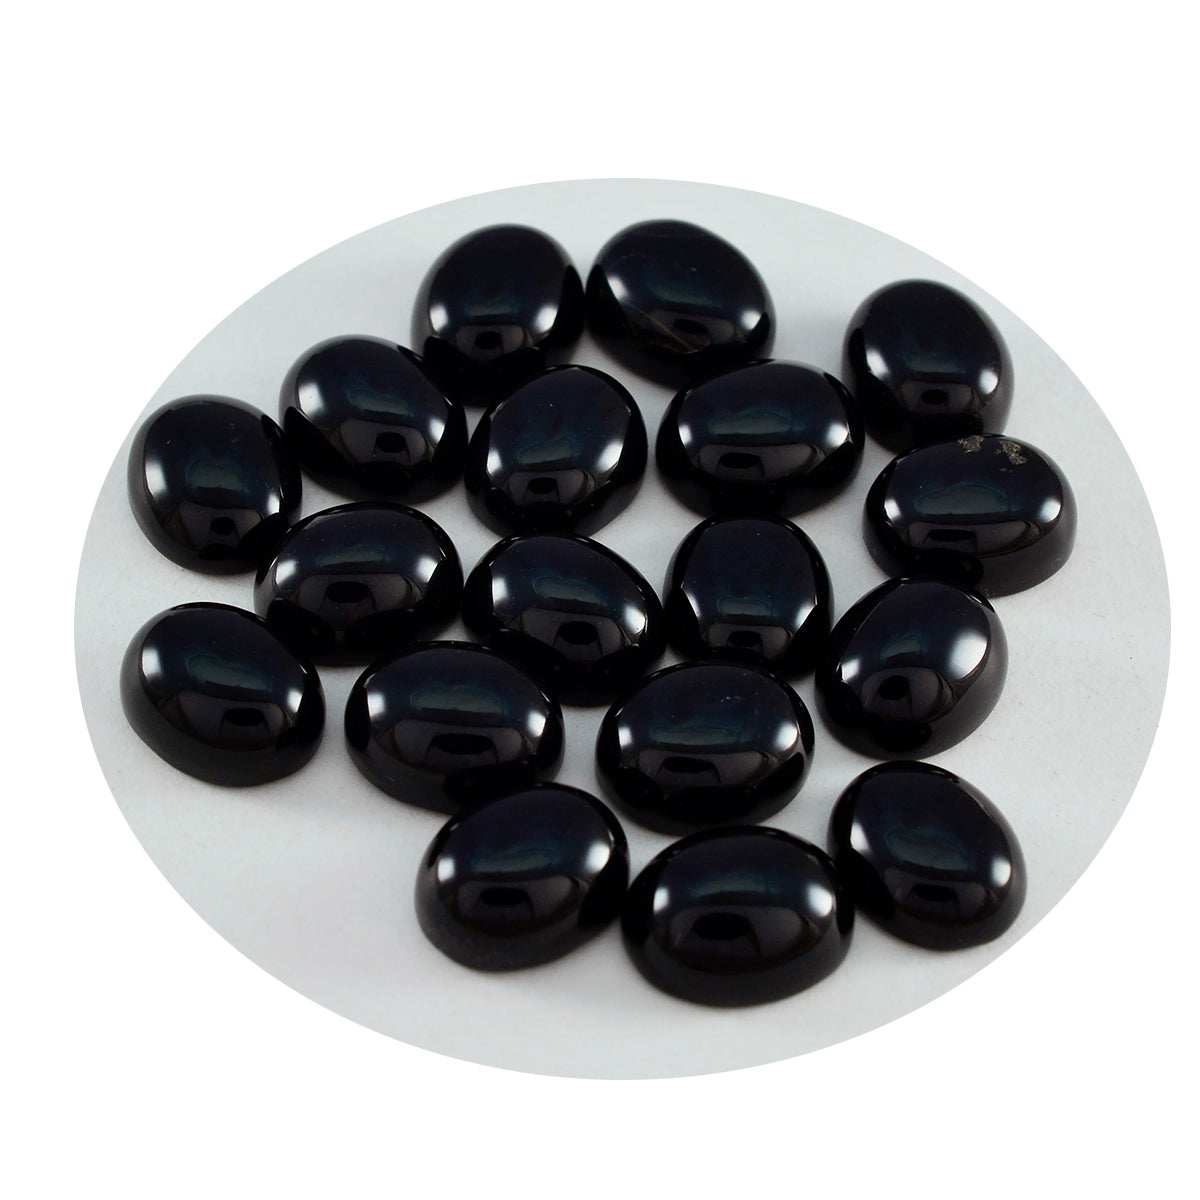 Riyogems 1 Stück schwarzer Onyx-Cabochon, 5 x 7 mm, ovale Form, schöner Qualitätsstein